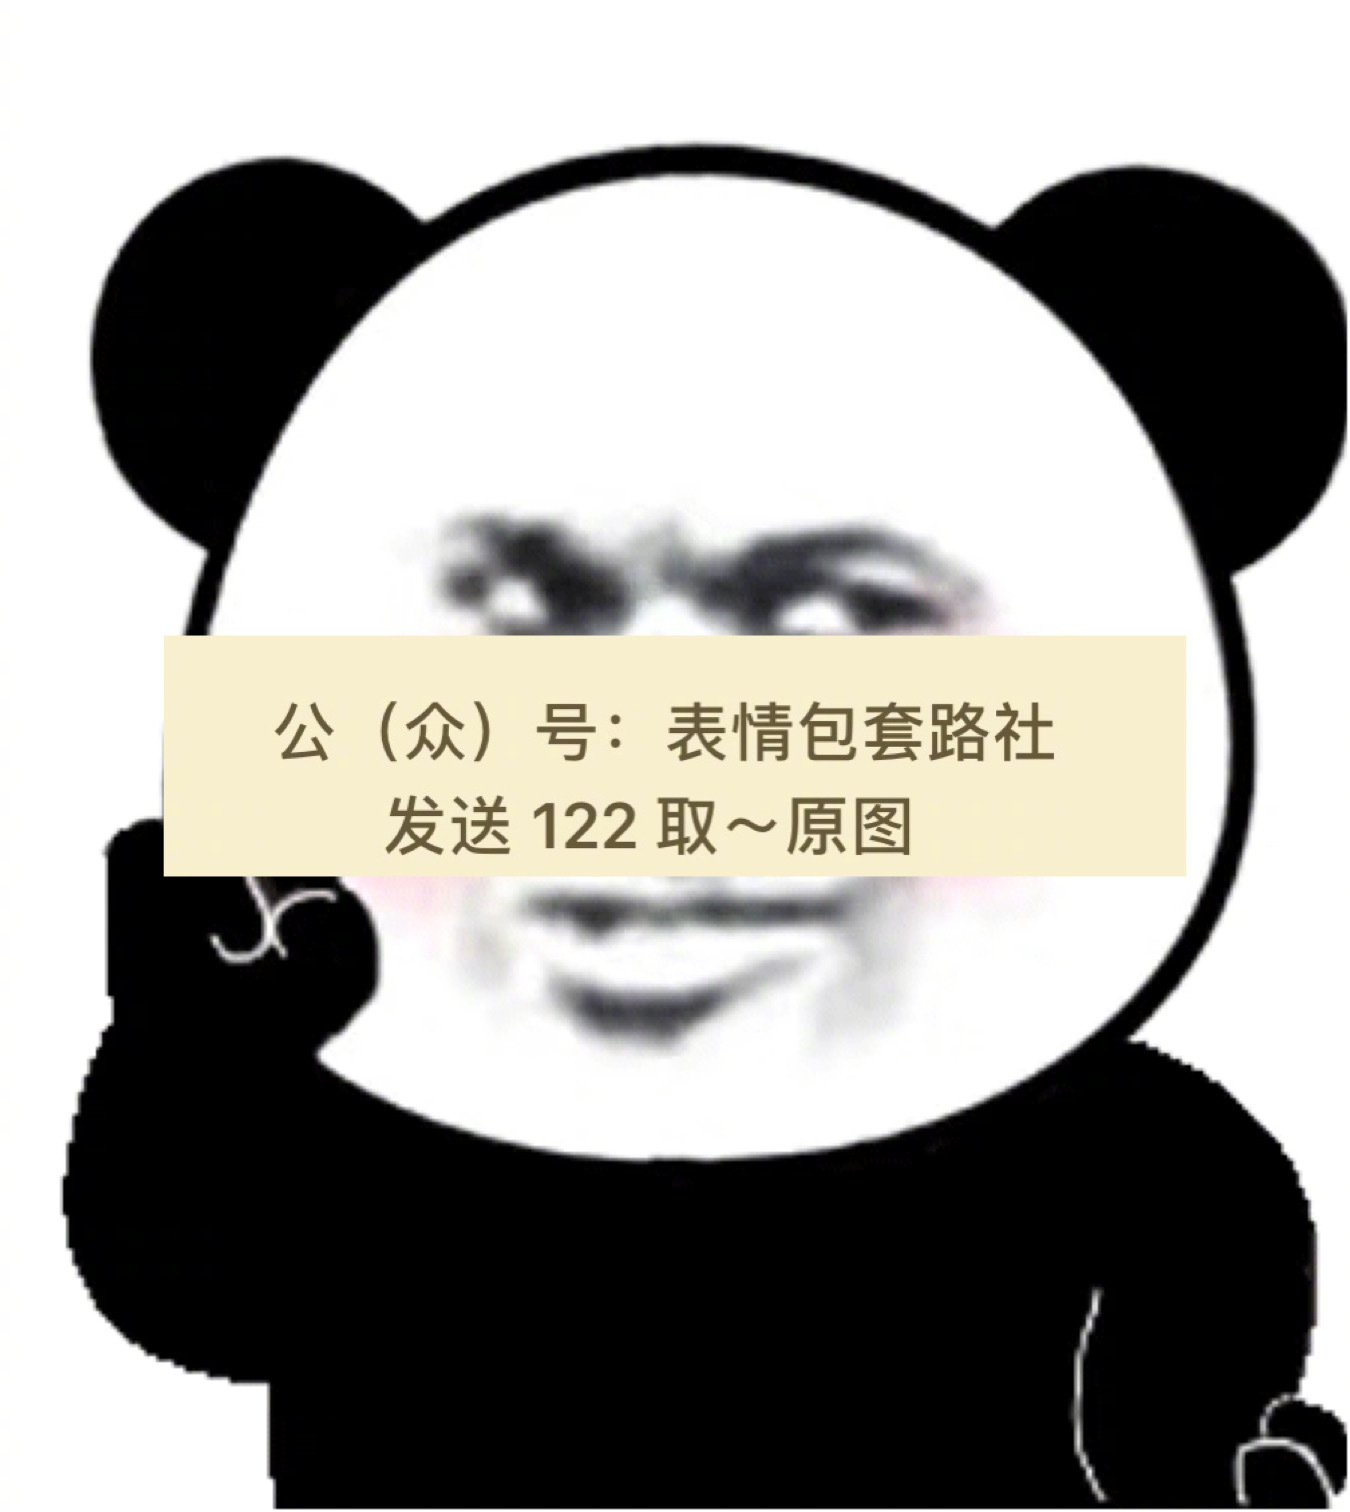 熊猫头超大霸屏表情包(含代码)变大超大熊猫表情包熊猫头qq超大捌屏